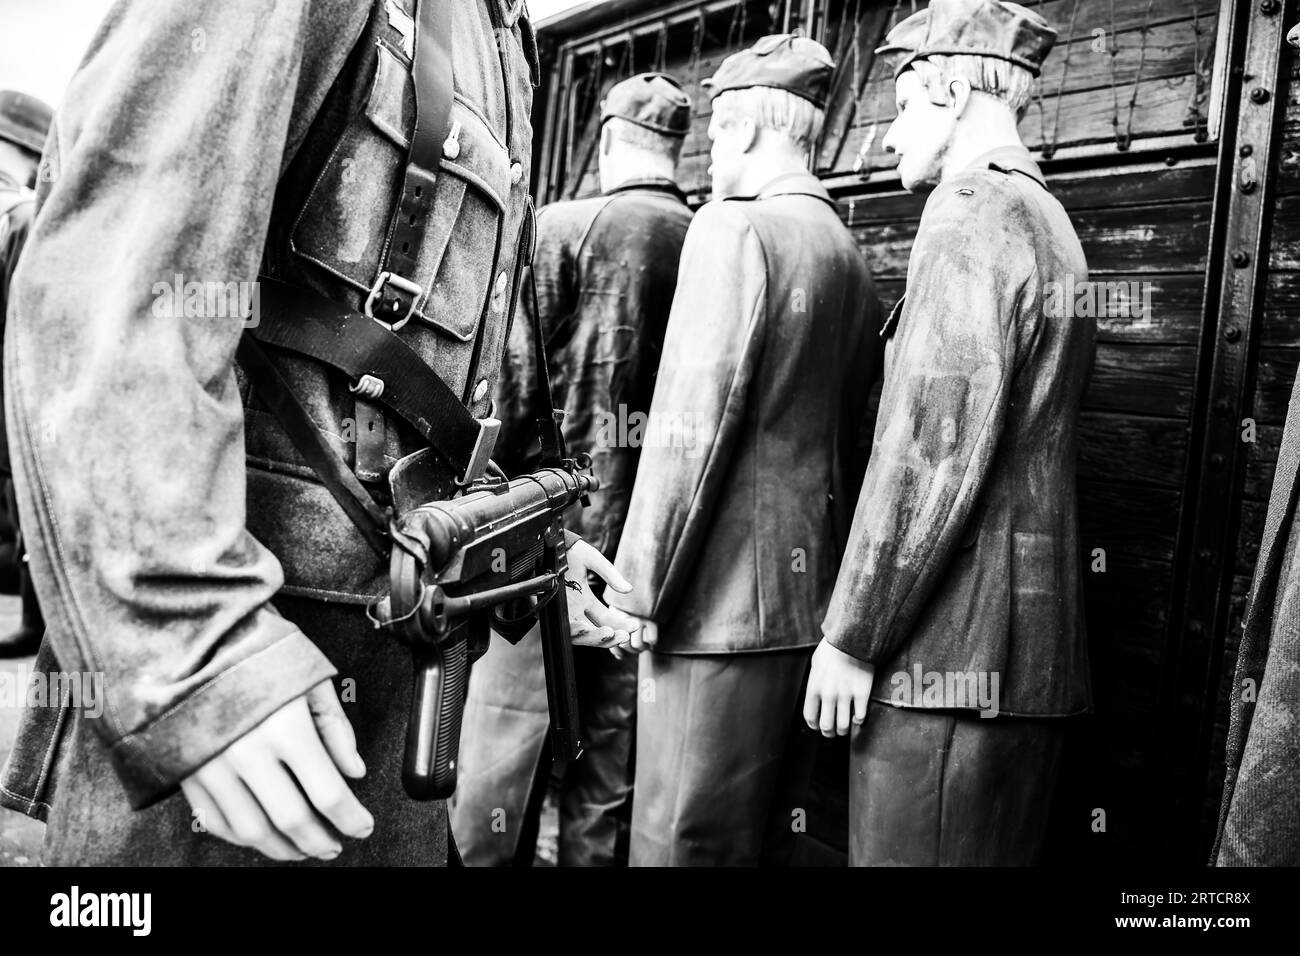 Nahaufnahme eines deutschen Soldaten mit Gewehr in der Hand während der Deportation von juden im zweiten weltkrieg - Konzept der shoah, Holocaust und Deportation von jüdischen Menschen Stockfoto